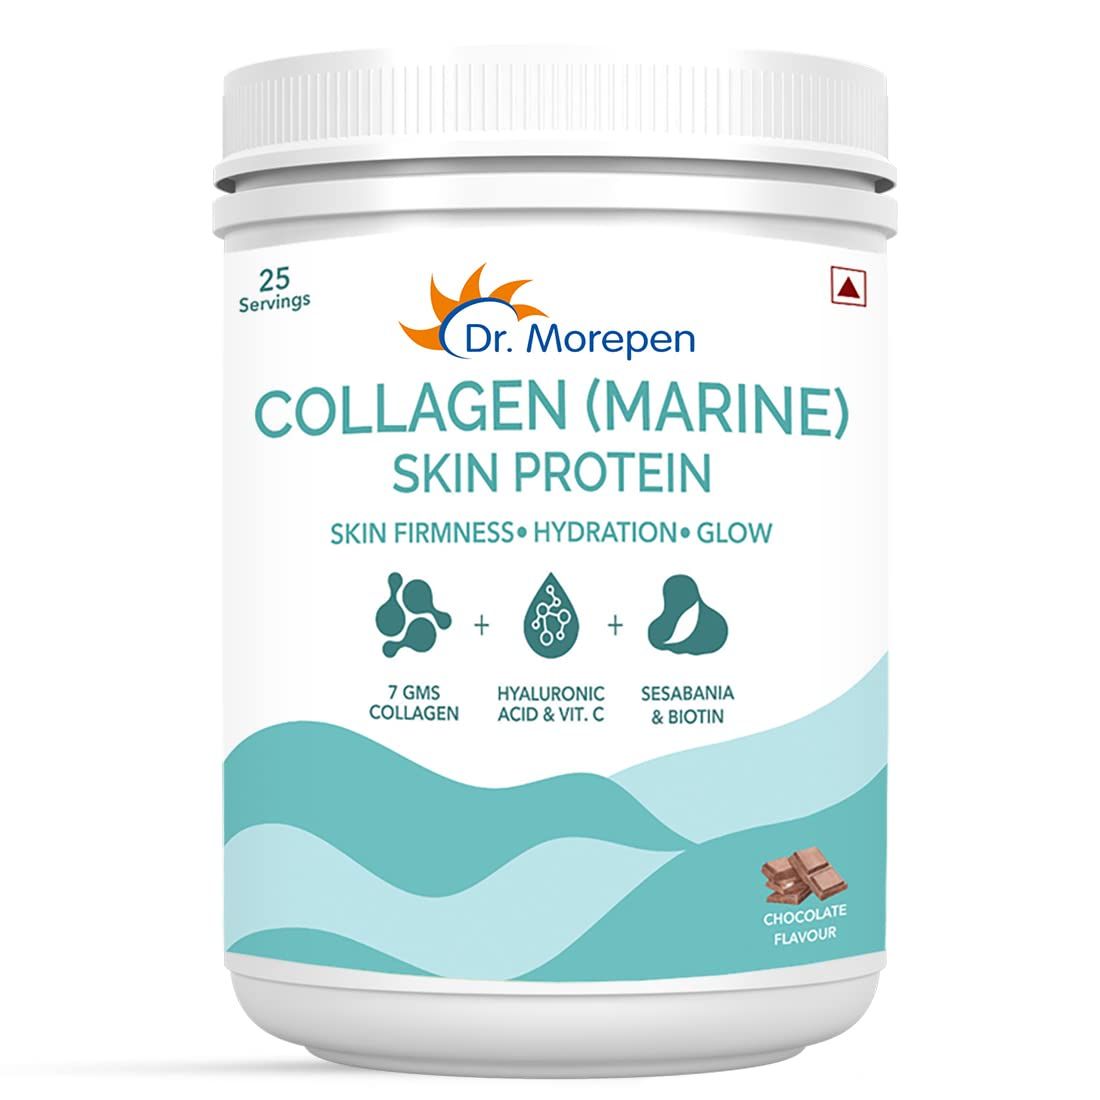 Dr Morepen Collagen Marine Skin Protein Image